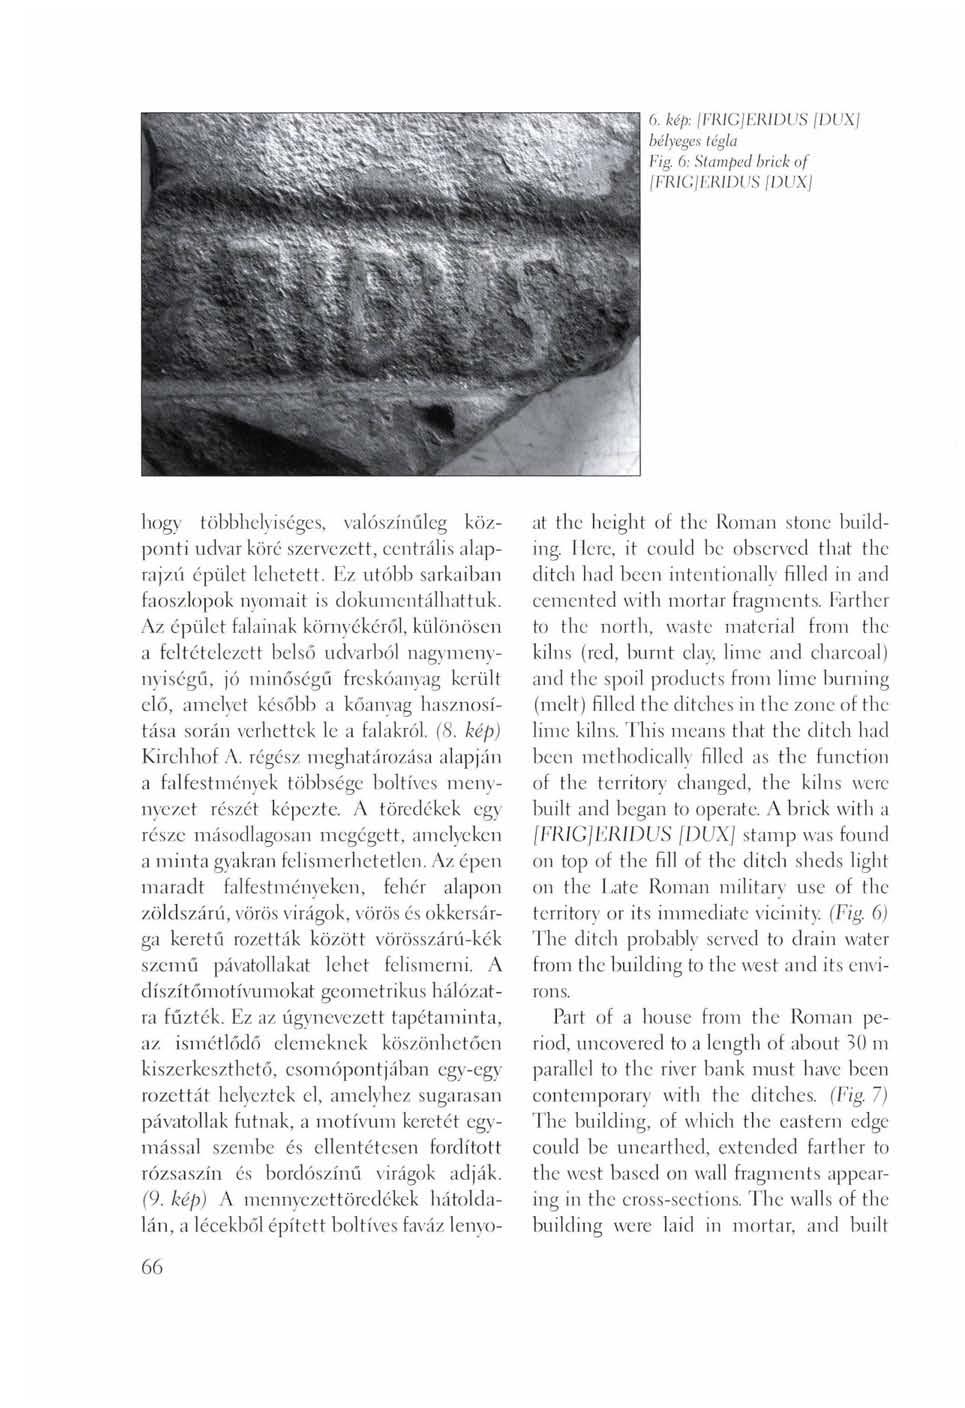 6. kép: [FRIGJERIDUS [DUX] bélyeges tégla Fig. 6: Stamped brick of [FRIGJERIDUS [DUX] hogy többhelyiséges, valószínűleg központi udvar köré szervezett, centrális alaprajzéi épület lehetett.